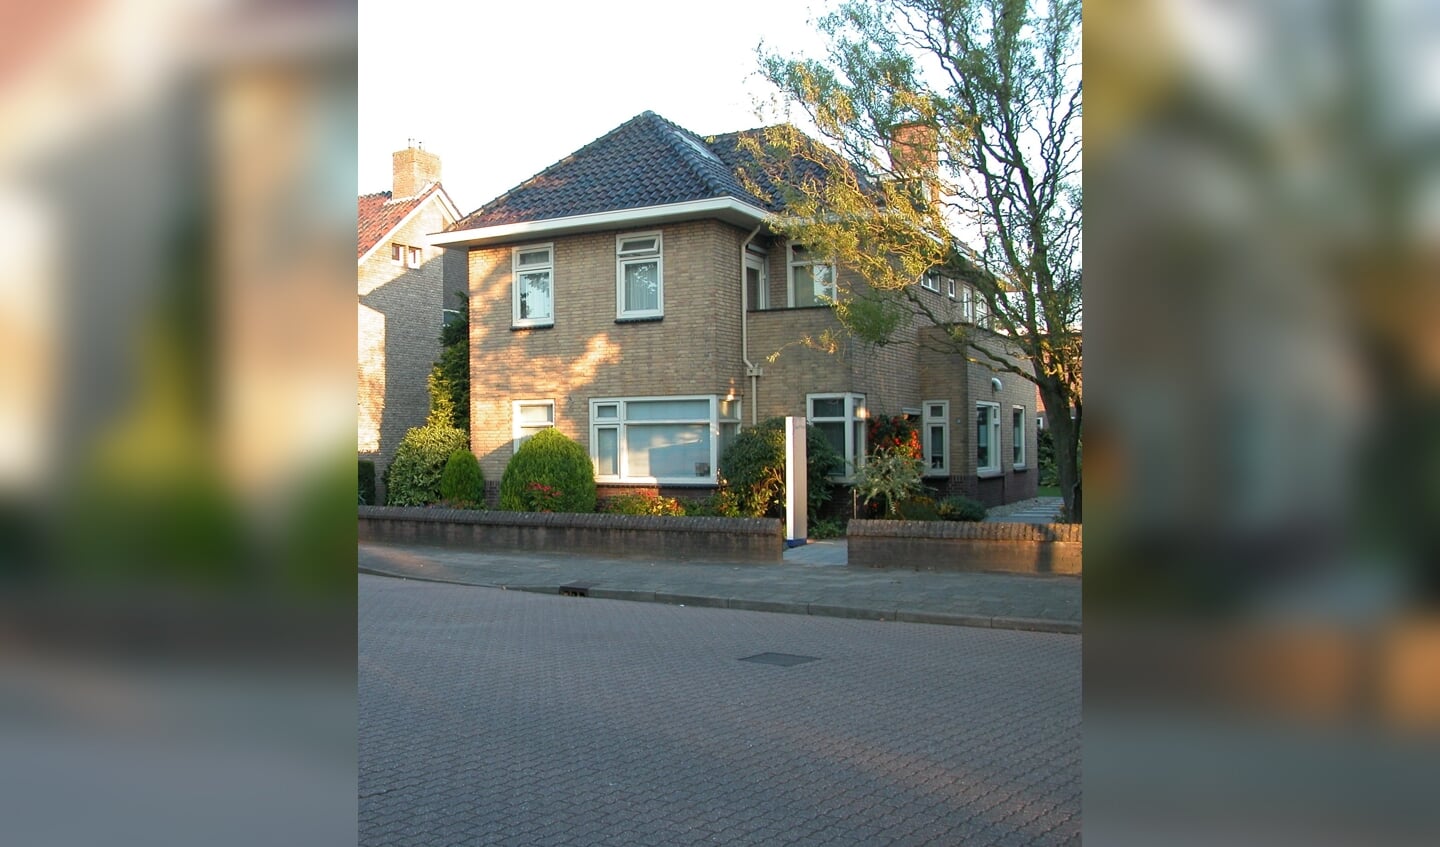 Het woonhuis aan de Marktstraat 36 in Wierden.